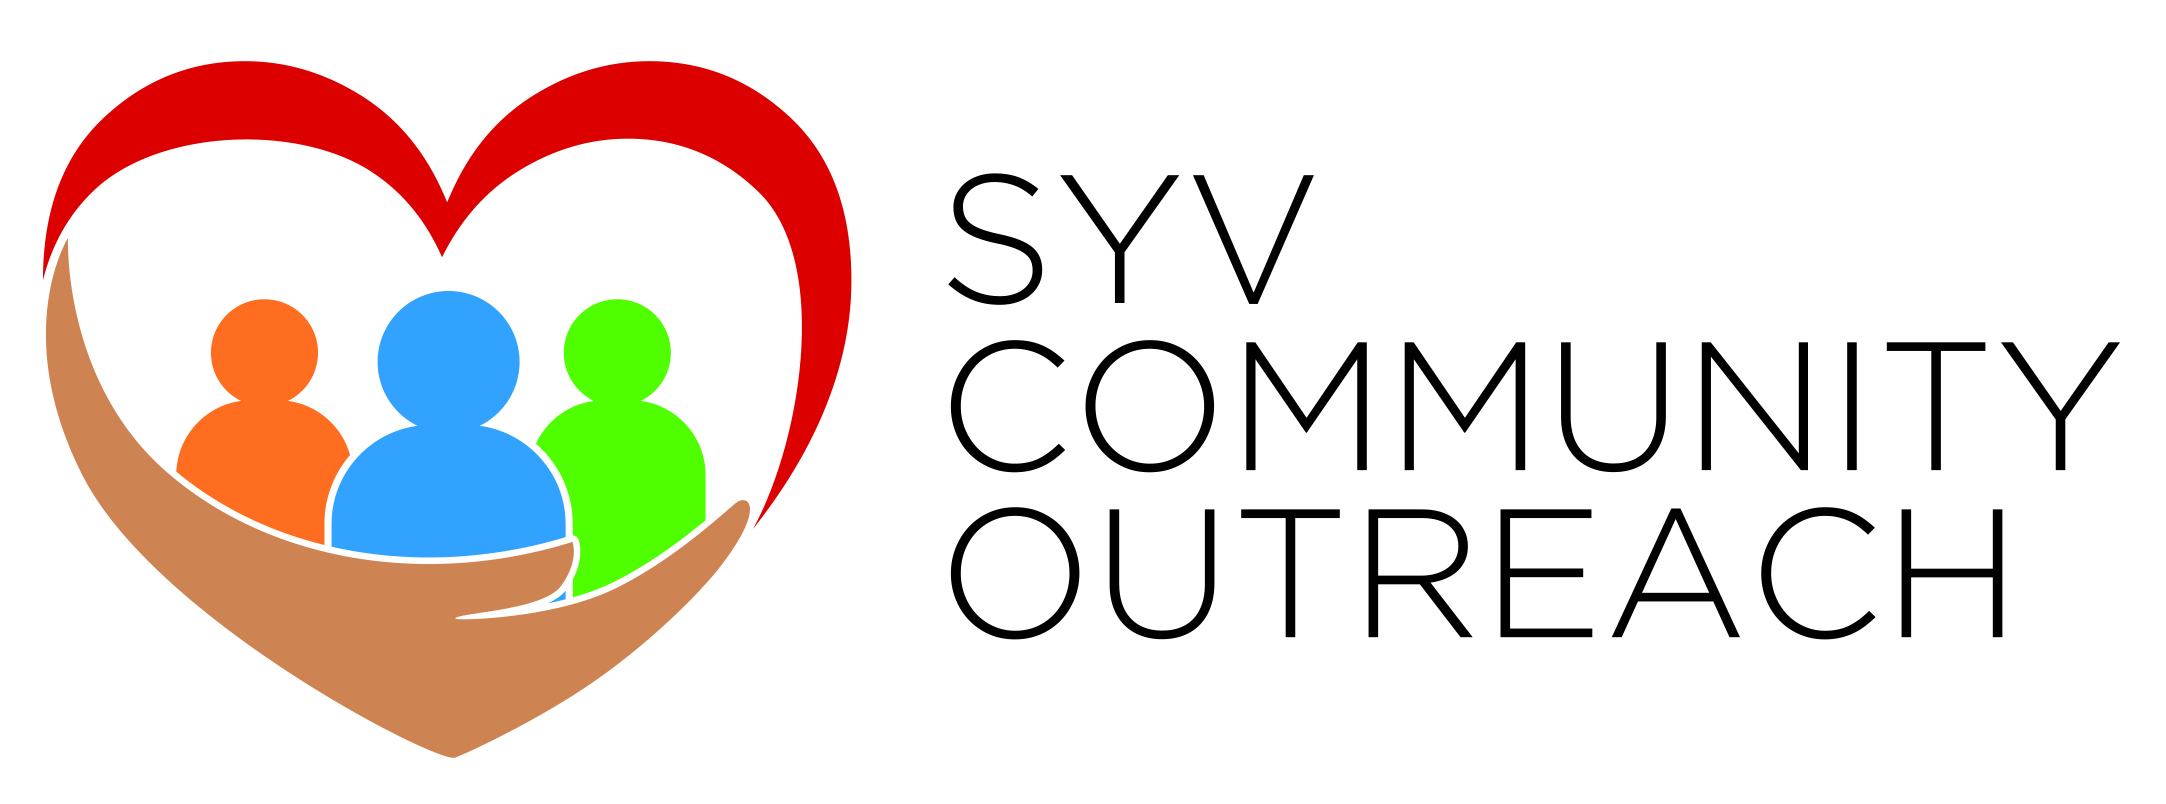 SYV Community Outreach 